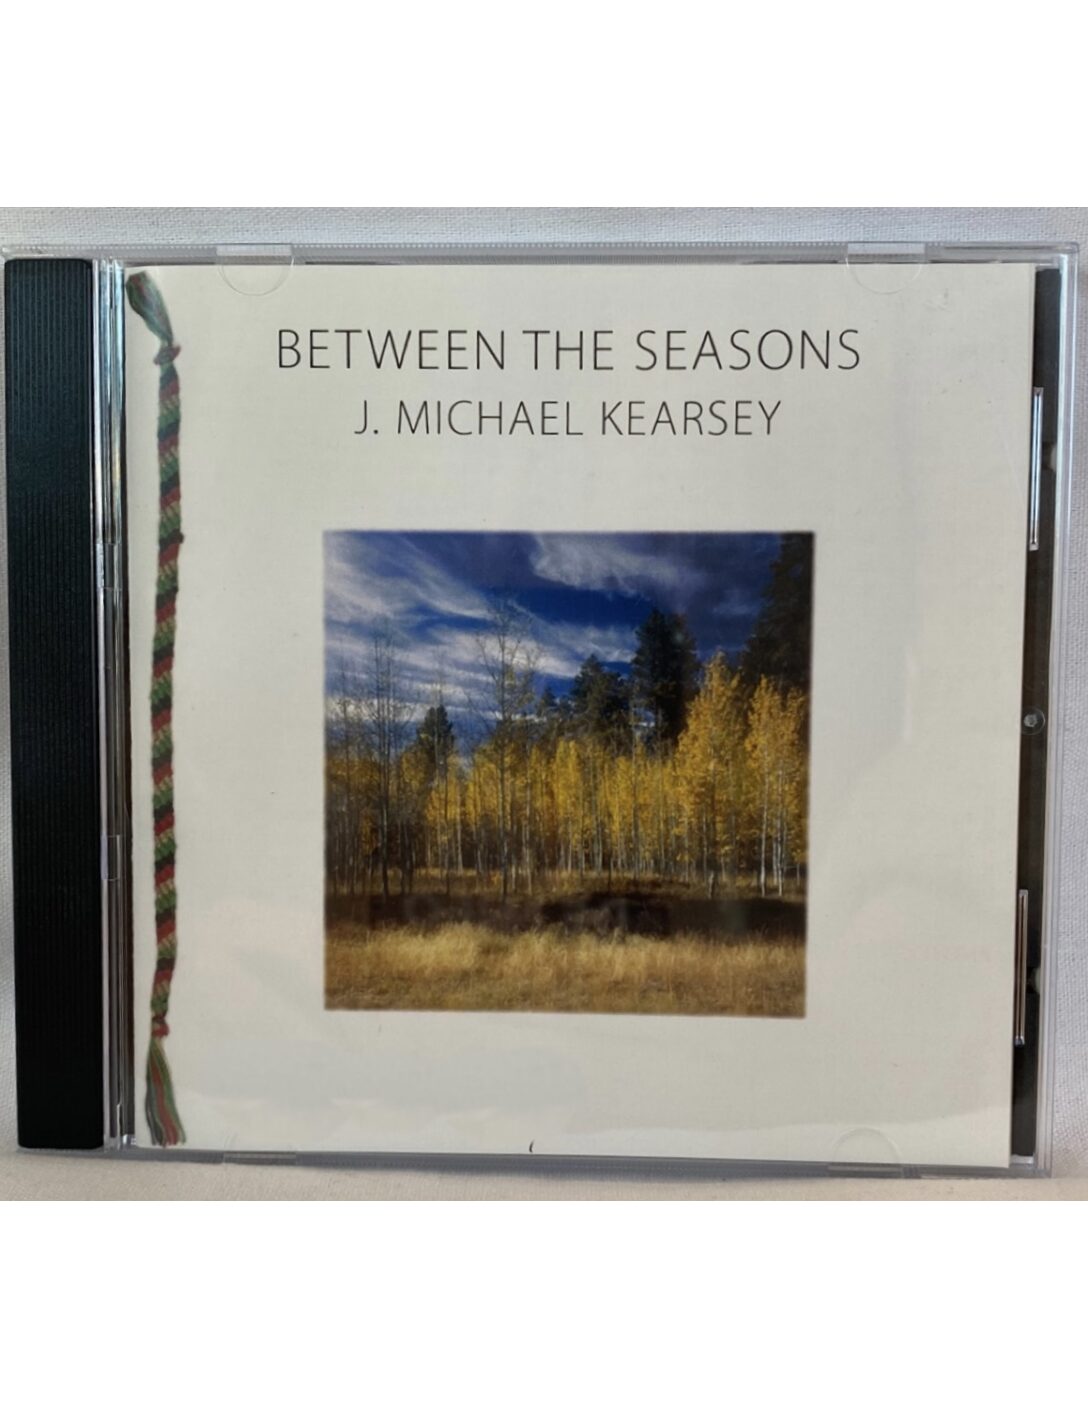 Between The Seasons CD By J. Michael Kearsey